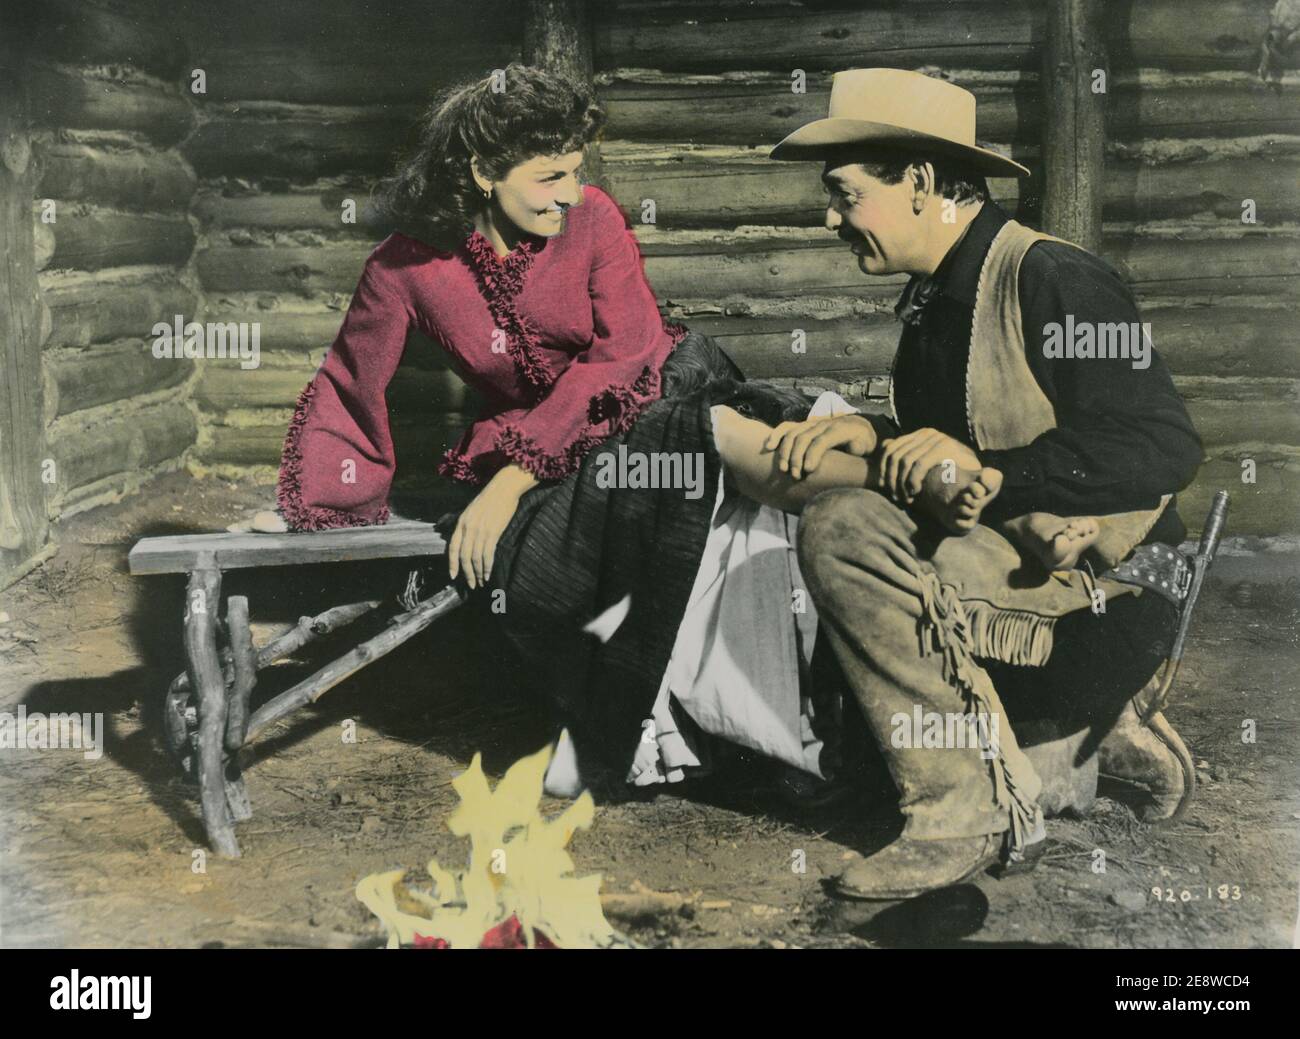 Los hombres altos. Una película occidental americana de 1955 protagonizada por Jane Russell y Clark Gable. Jane Russel nació en junio de 21 1921 y murió en febrero de 28 2011. La película se estrenó el 22 1955 de septiembre. Foto de stock